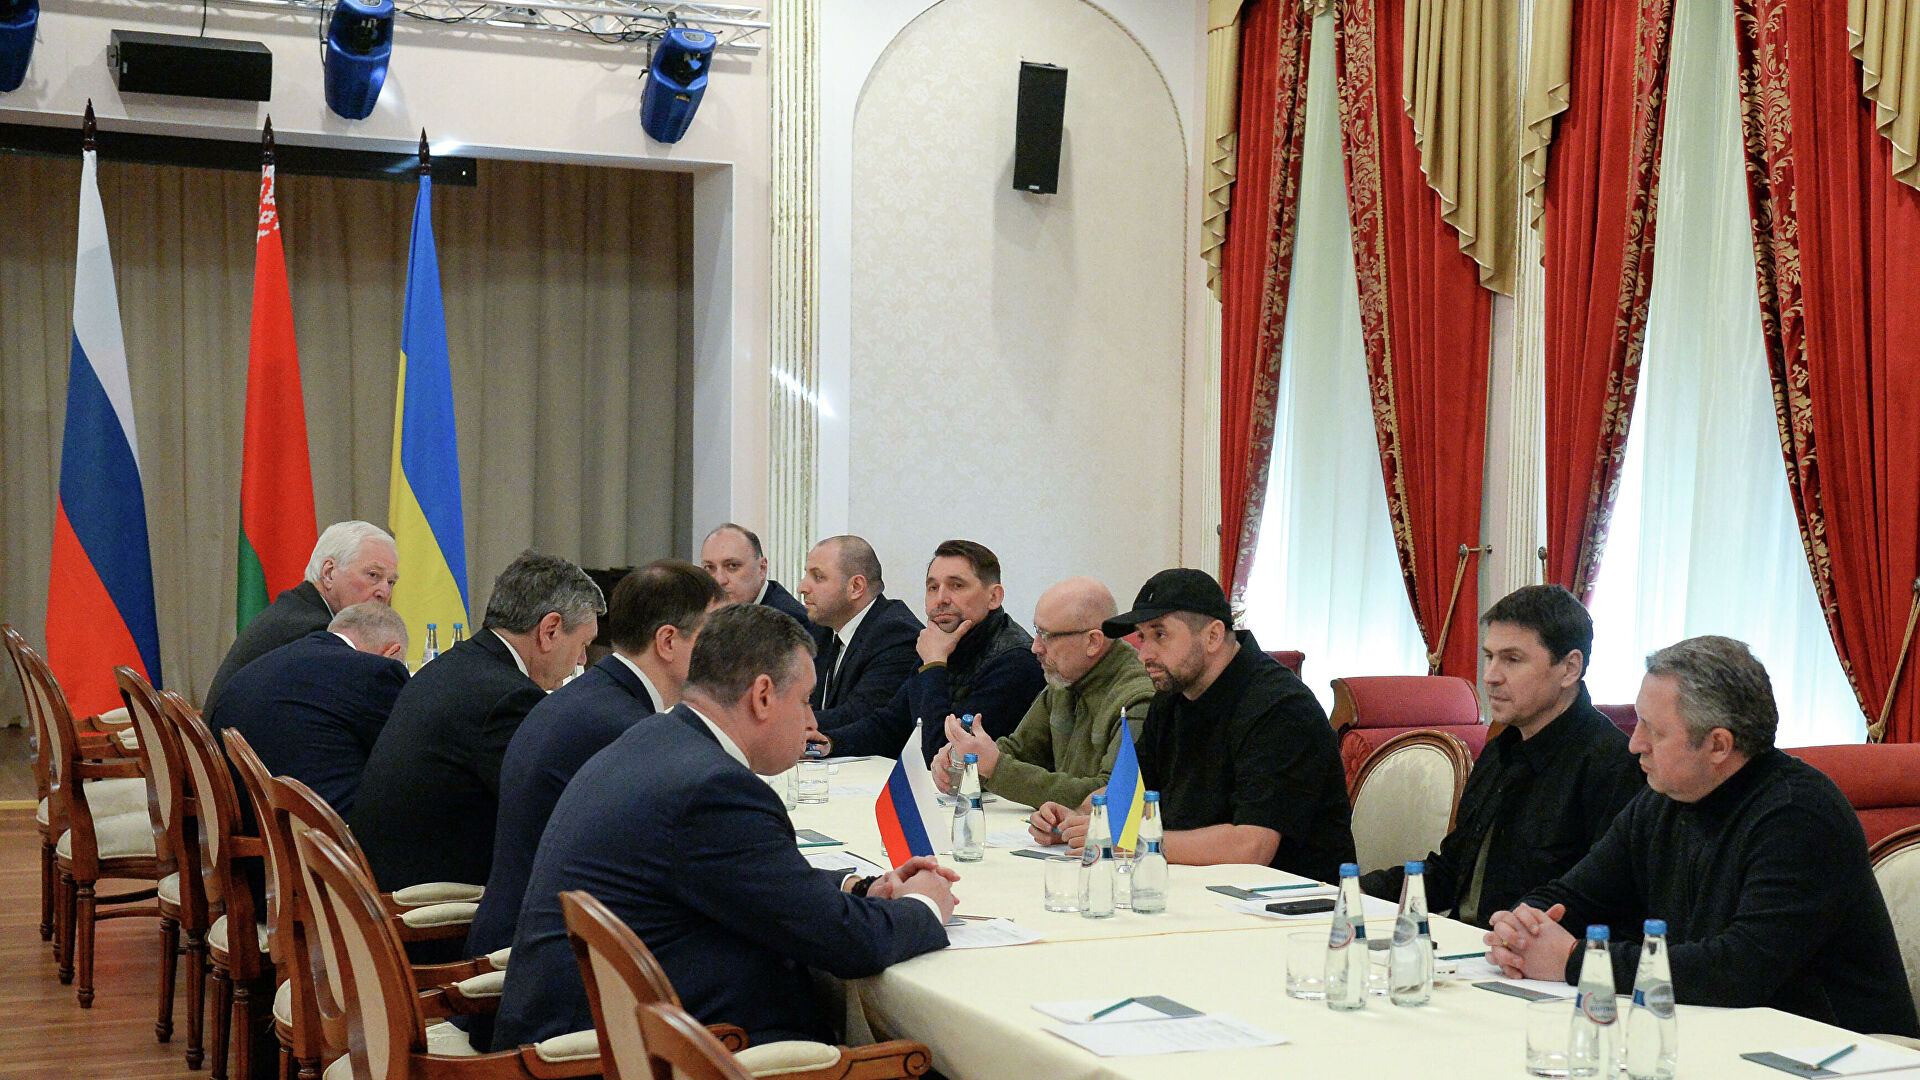 هذه تفاصيلها.... اختتام المفاوضات بين روسيا وأوكرانيا في بيلاروس